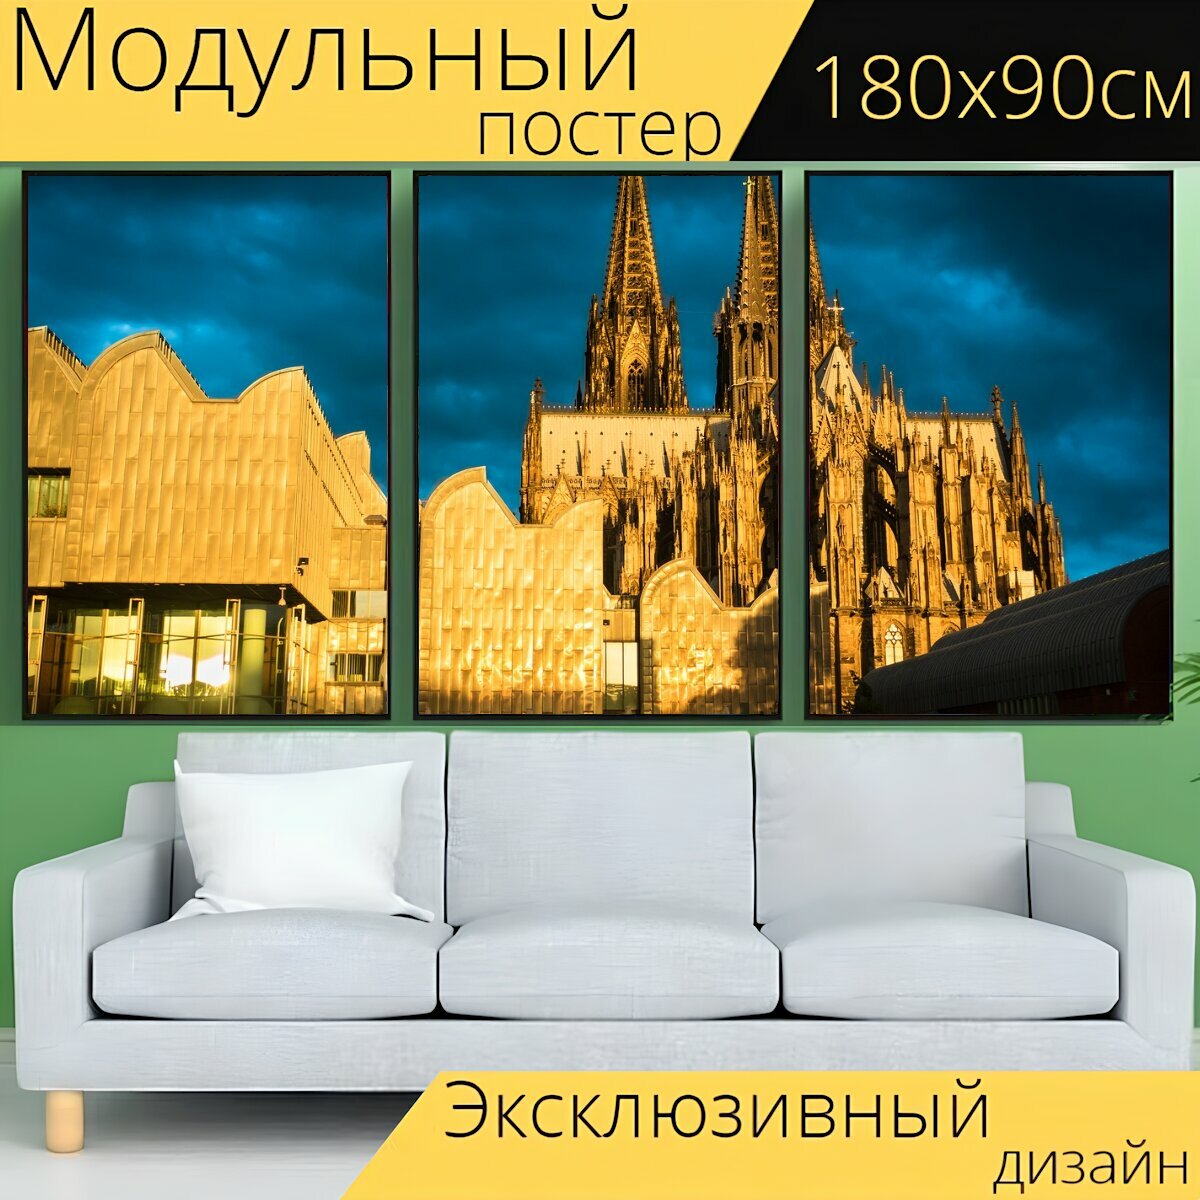 Модульный постер "Церковь, кафедральный собор, строительство" 180 x 90 см. для интерьера